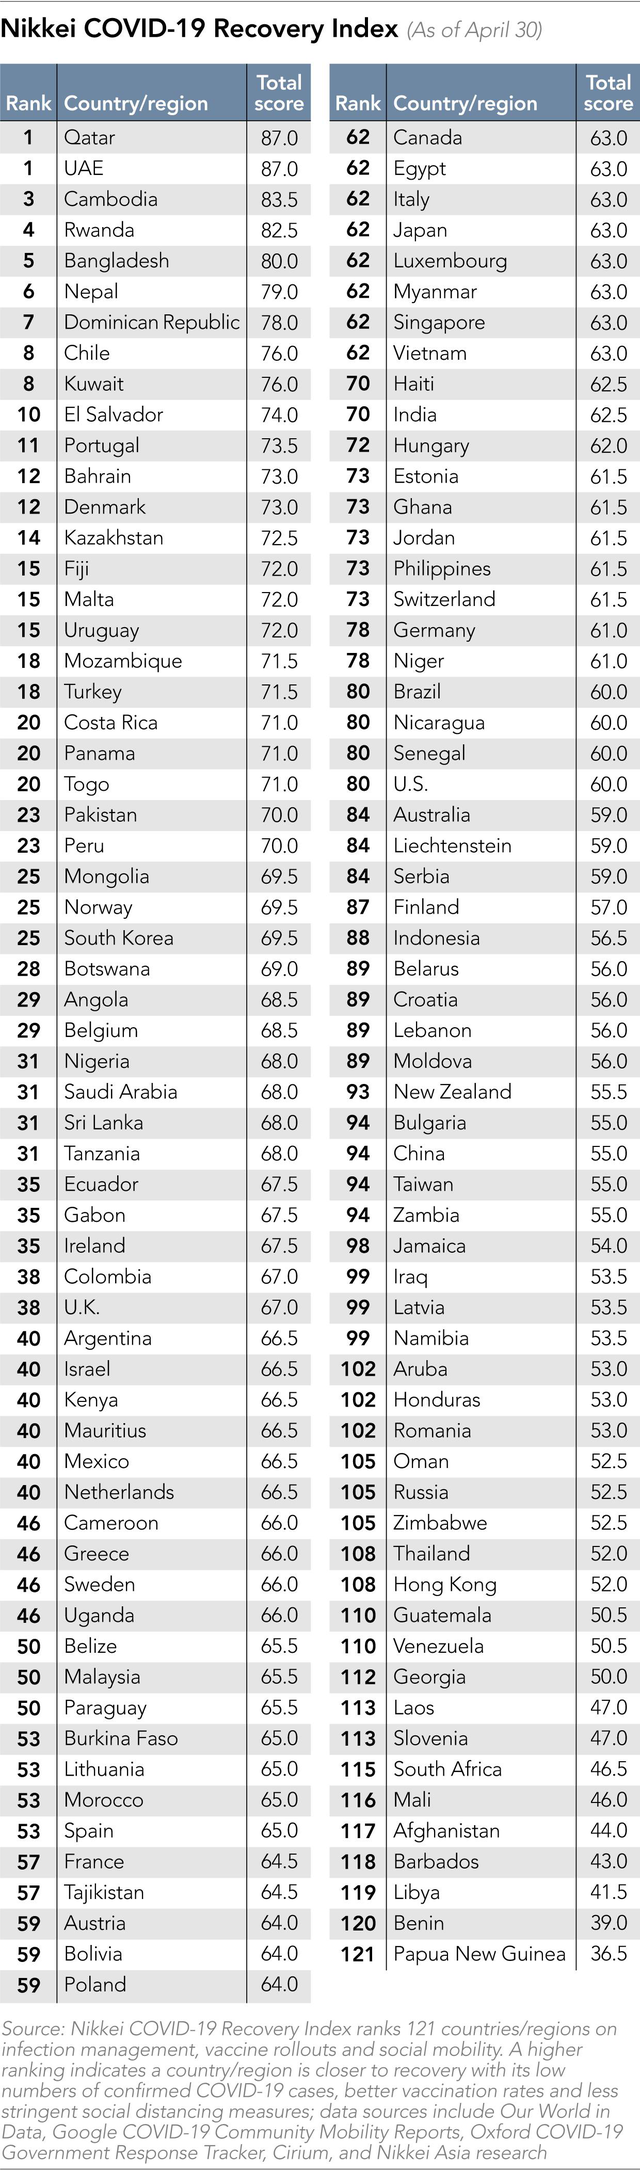  Việt Nam nhảy 30 bậc trong bảng xếp hạng Chỉ số phục hồi Covid-19, vươn lên ngang Nhật Bản, Singapore  - Ảnh 1.